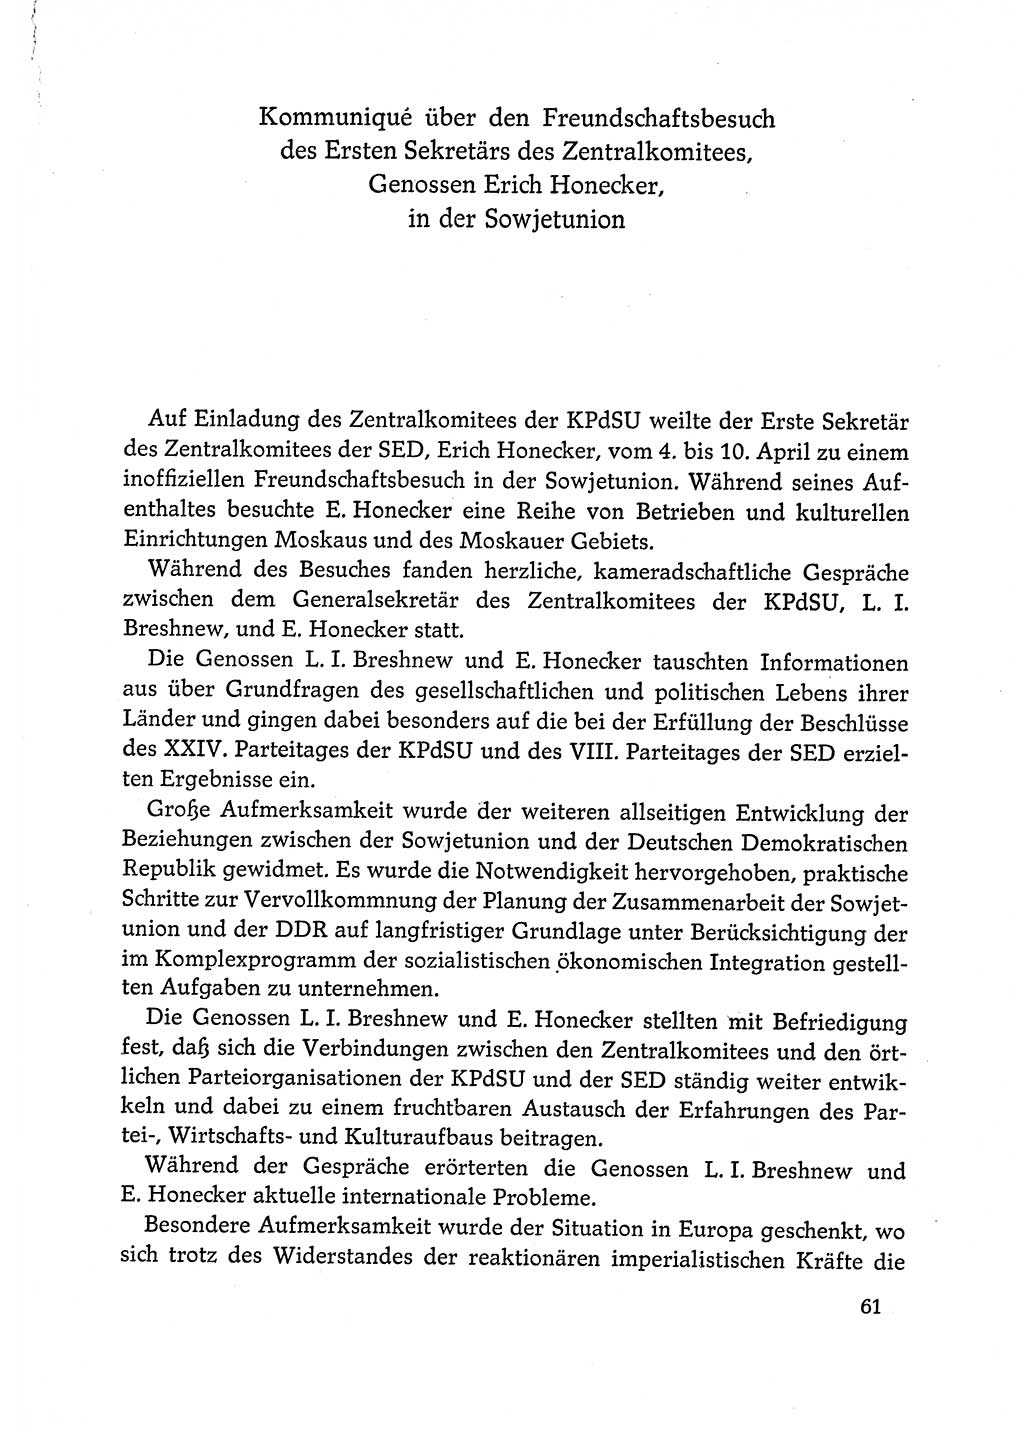 Dokumente der Sozialistischen Einheitspartei Deutschlands (SED) [Deutsche Demokratische Republik (DDR)] 1972-1973, Seite 61 (Dok. SED DDR 1972-1973, S. 61)